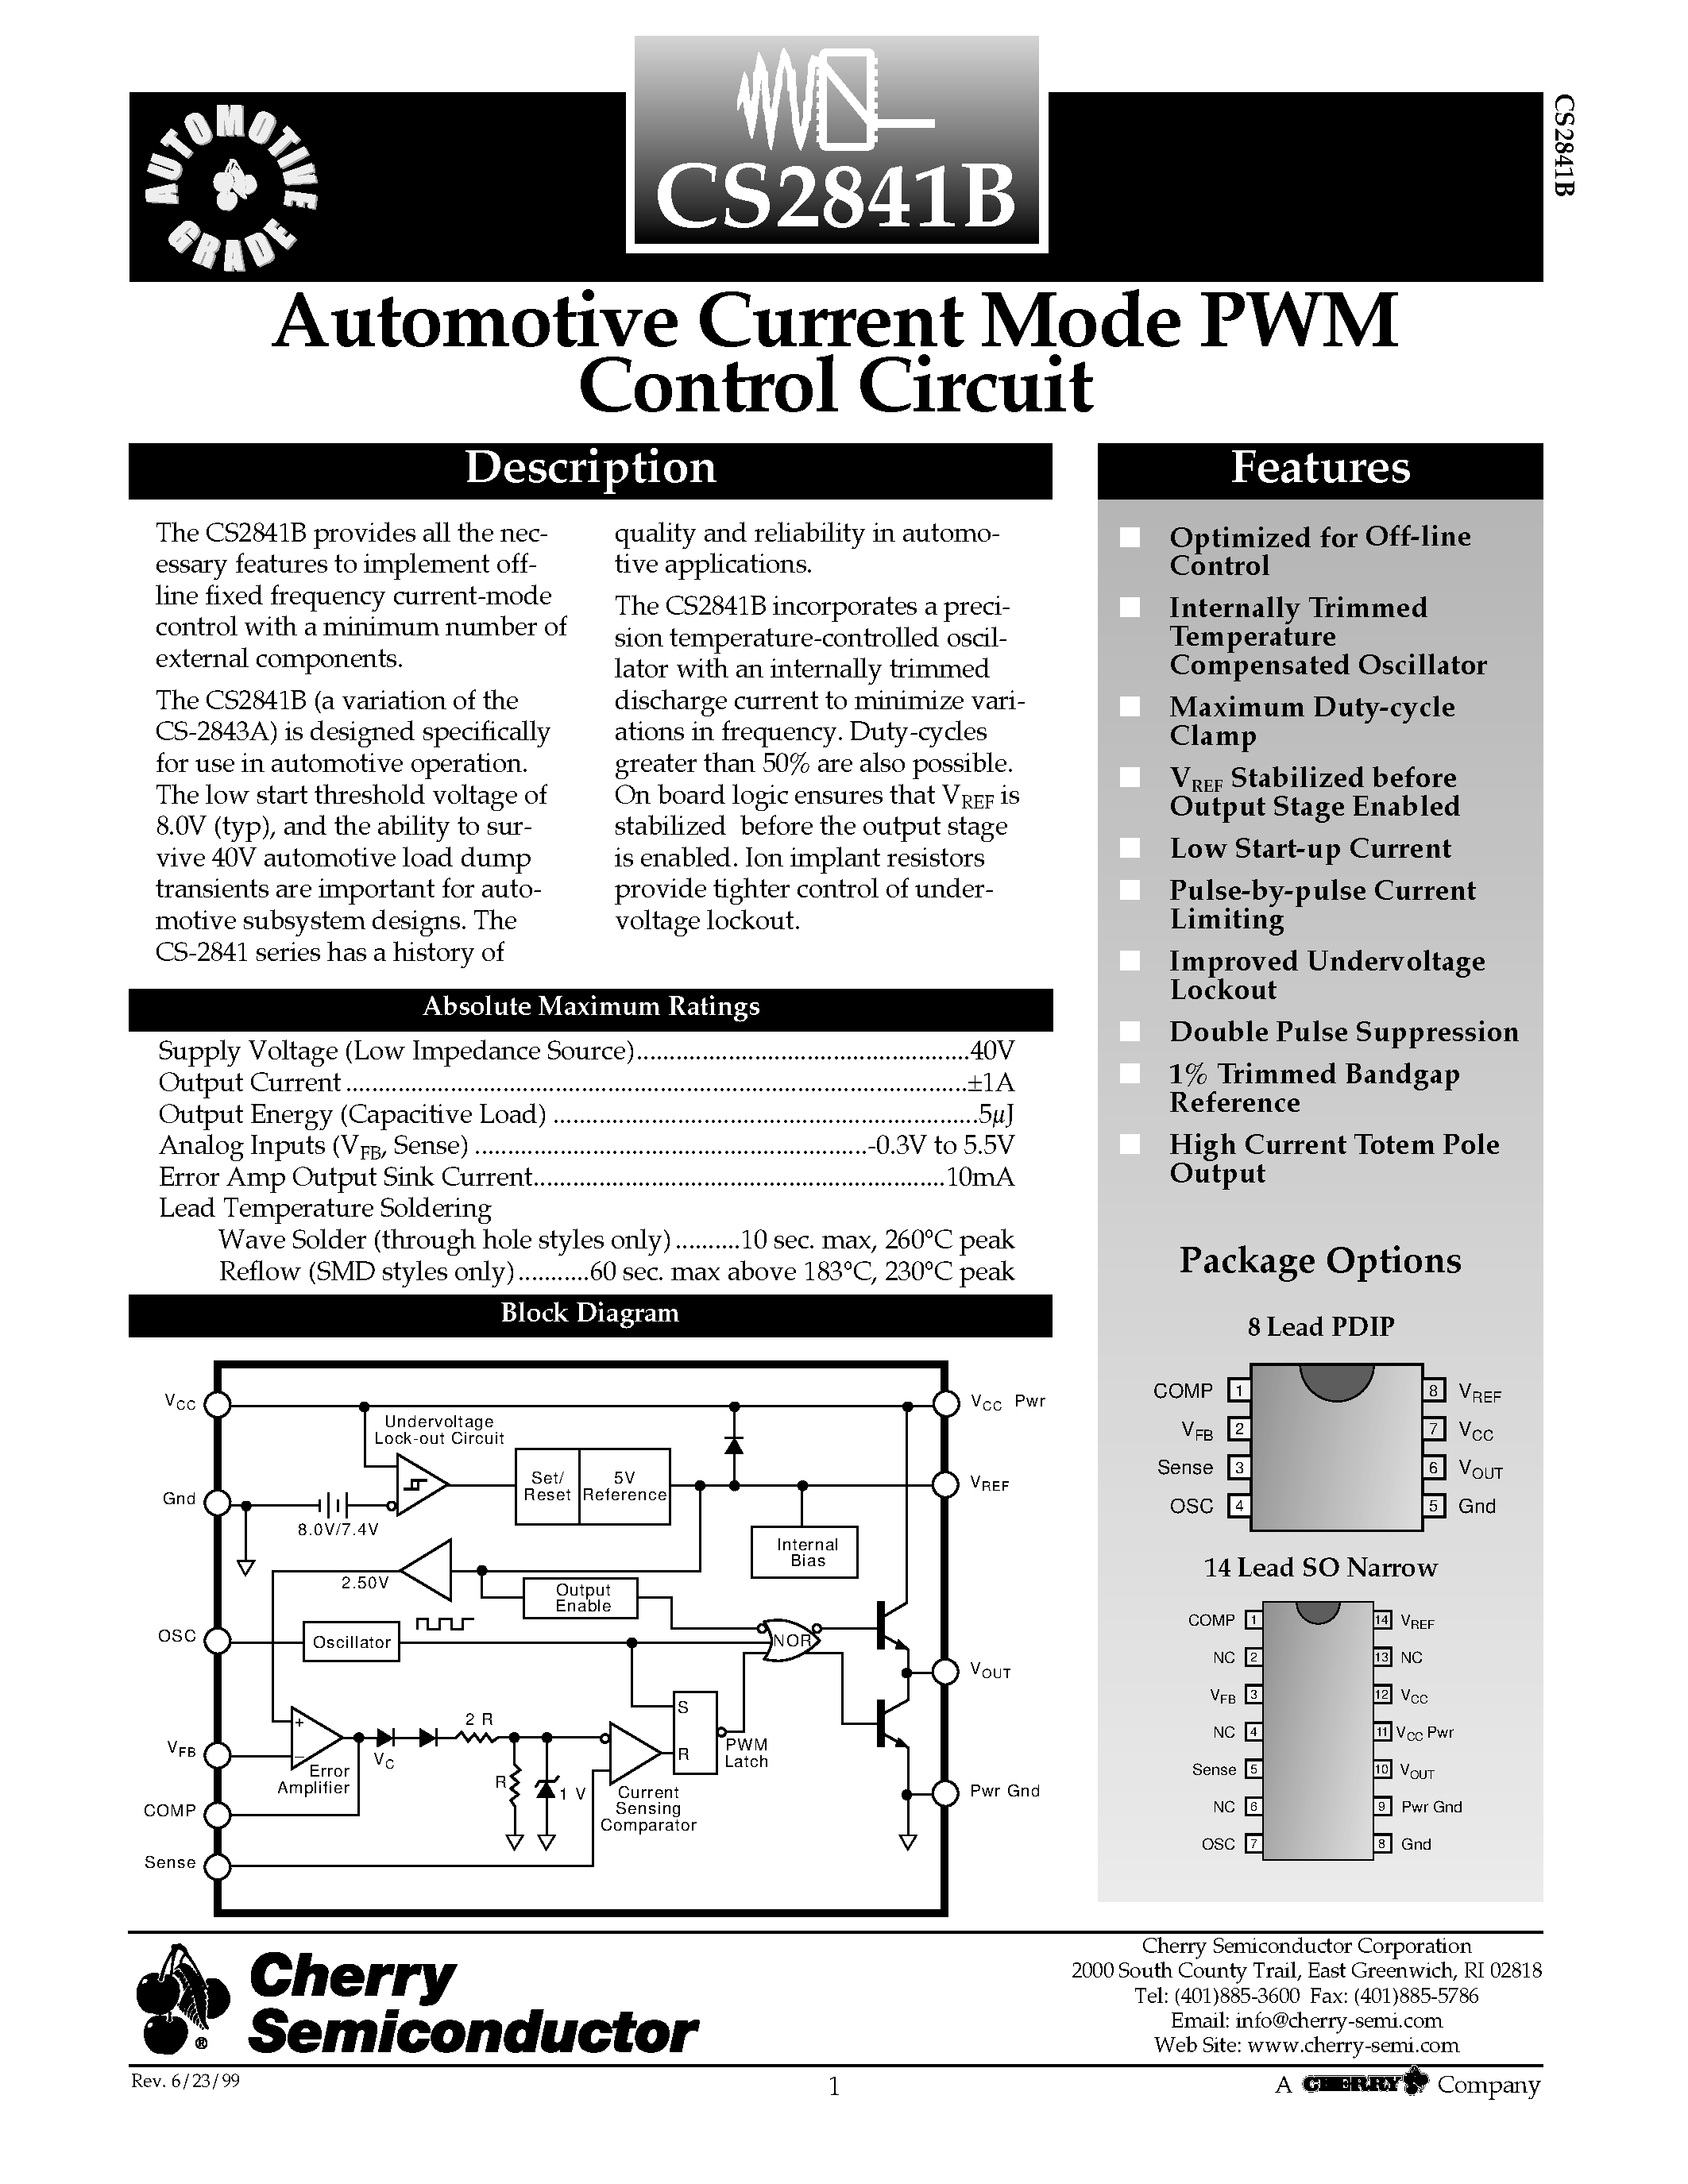 Даташит CS2841B - Automotive Current Mode PWM Control Circuit страница 1